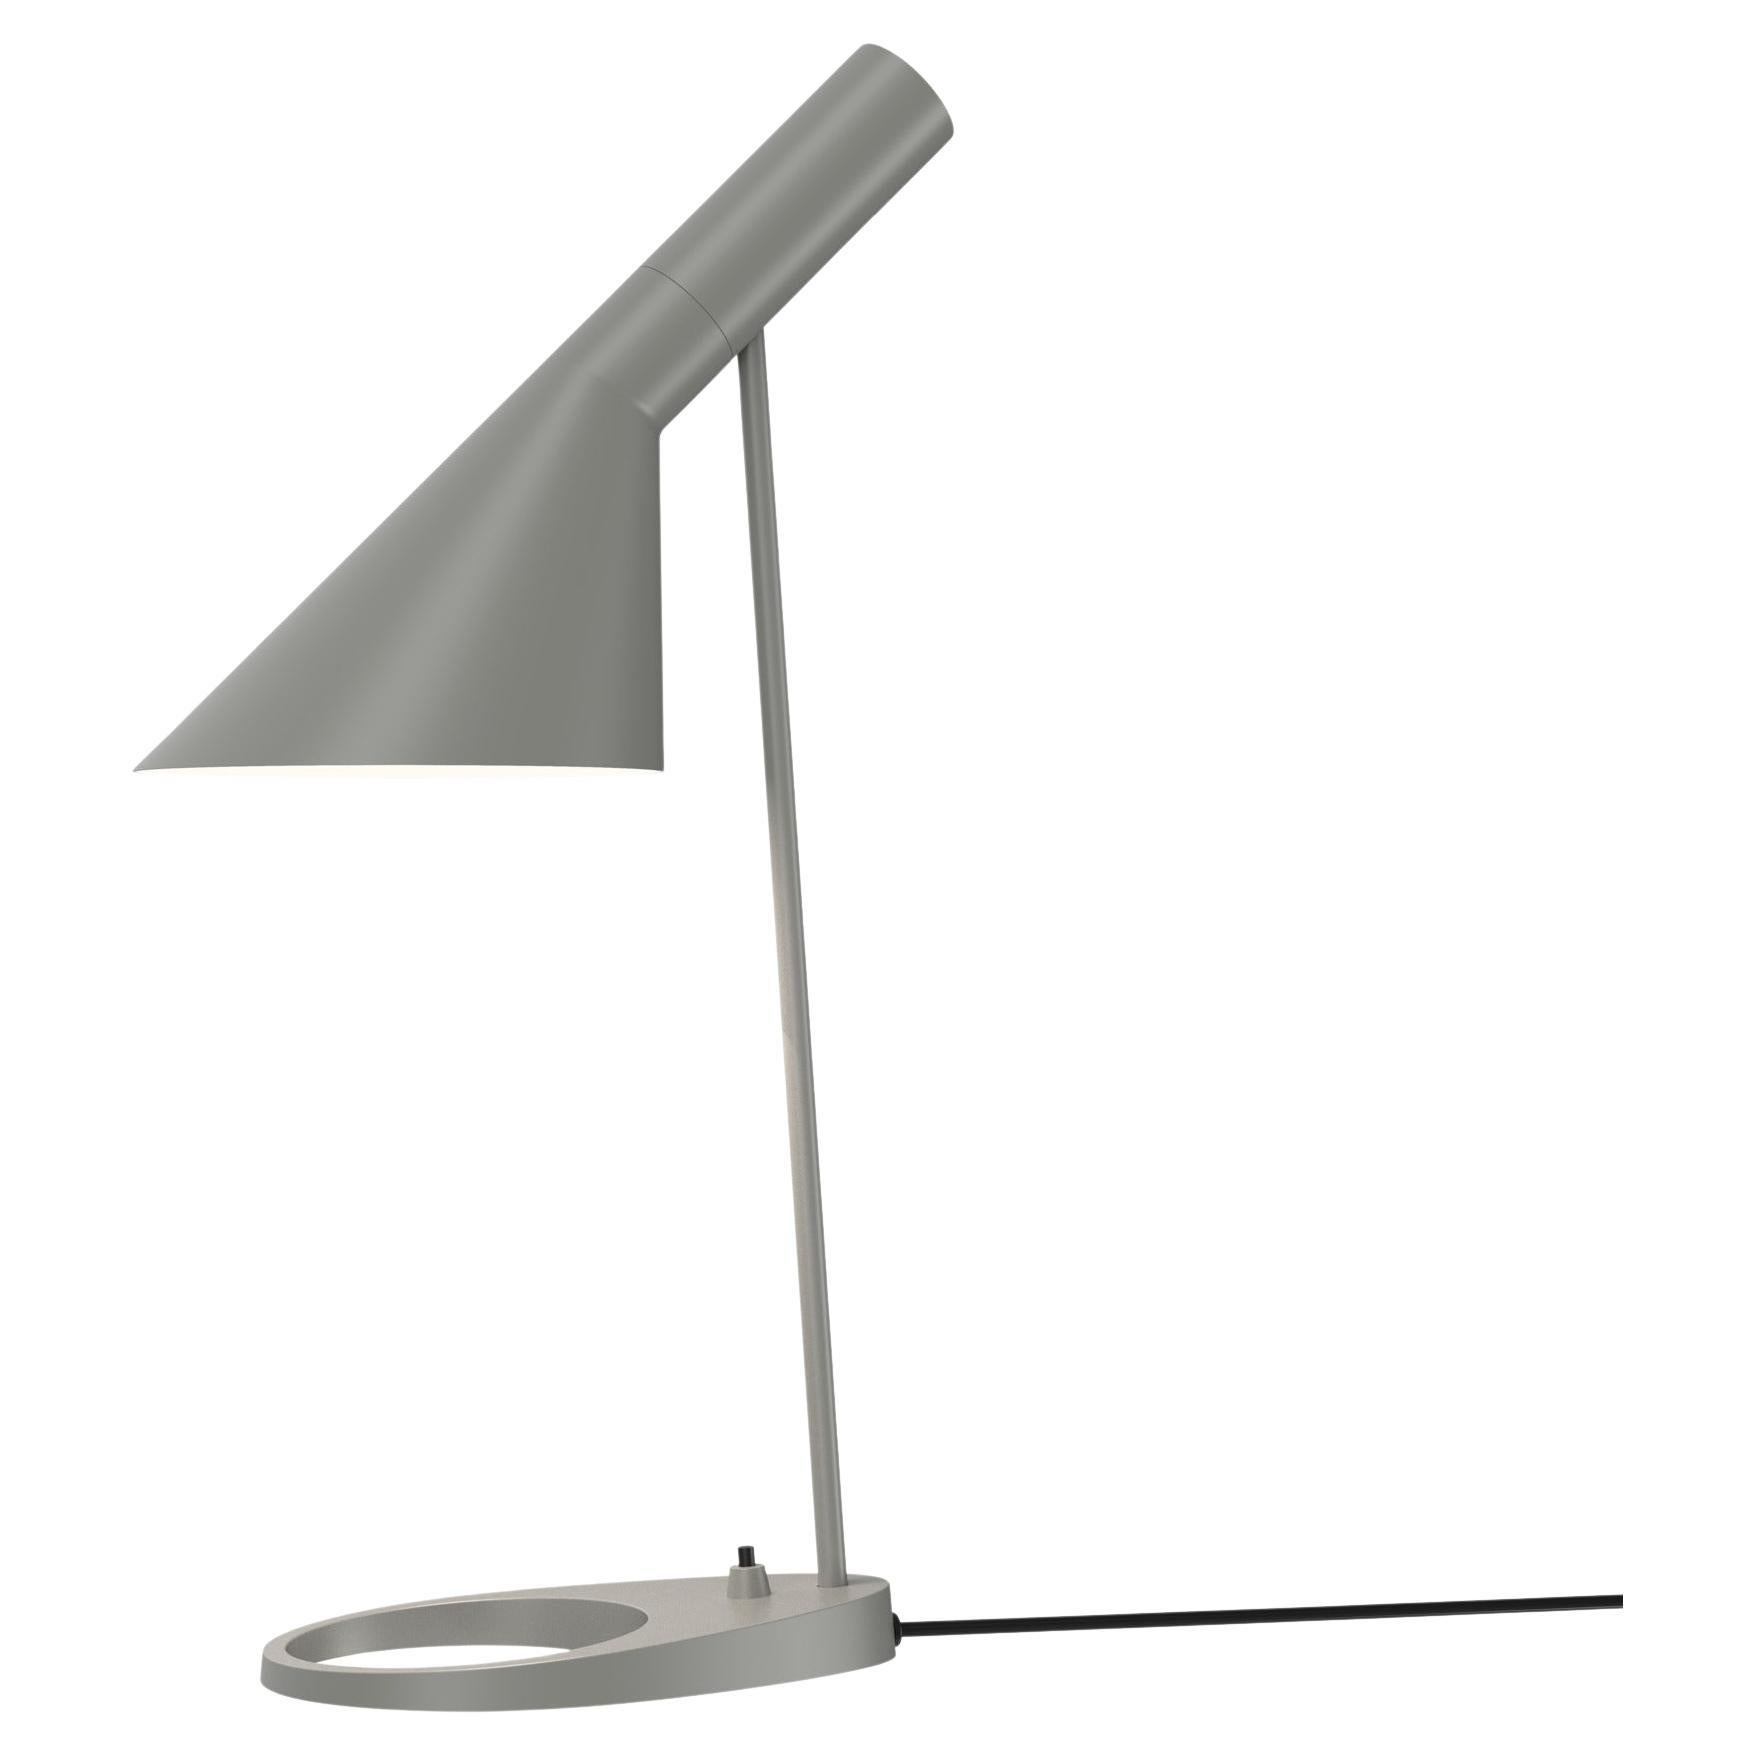 Arne Jacobsen AJ Table Lamp in Warm Grey for Louis Poulsen For Sale